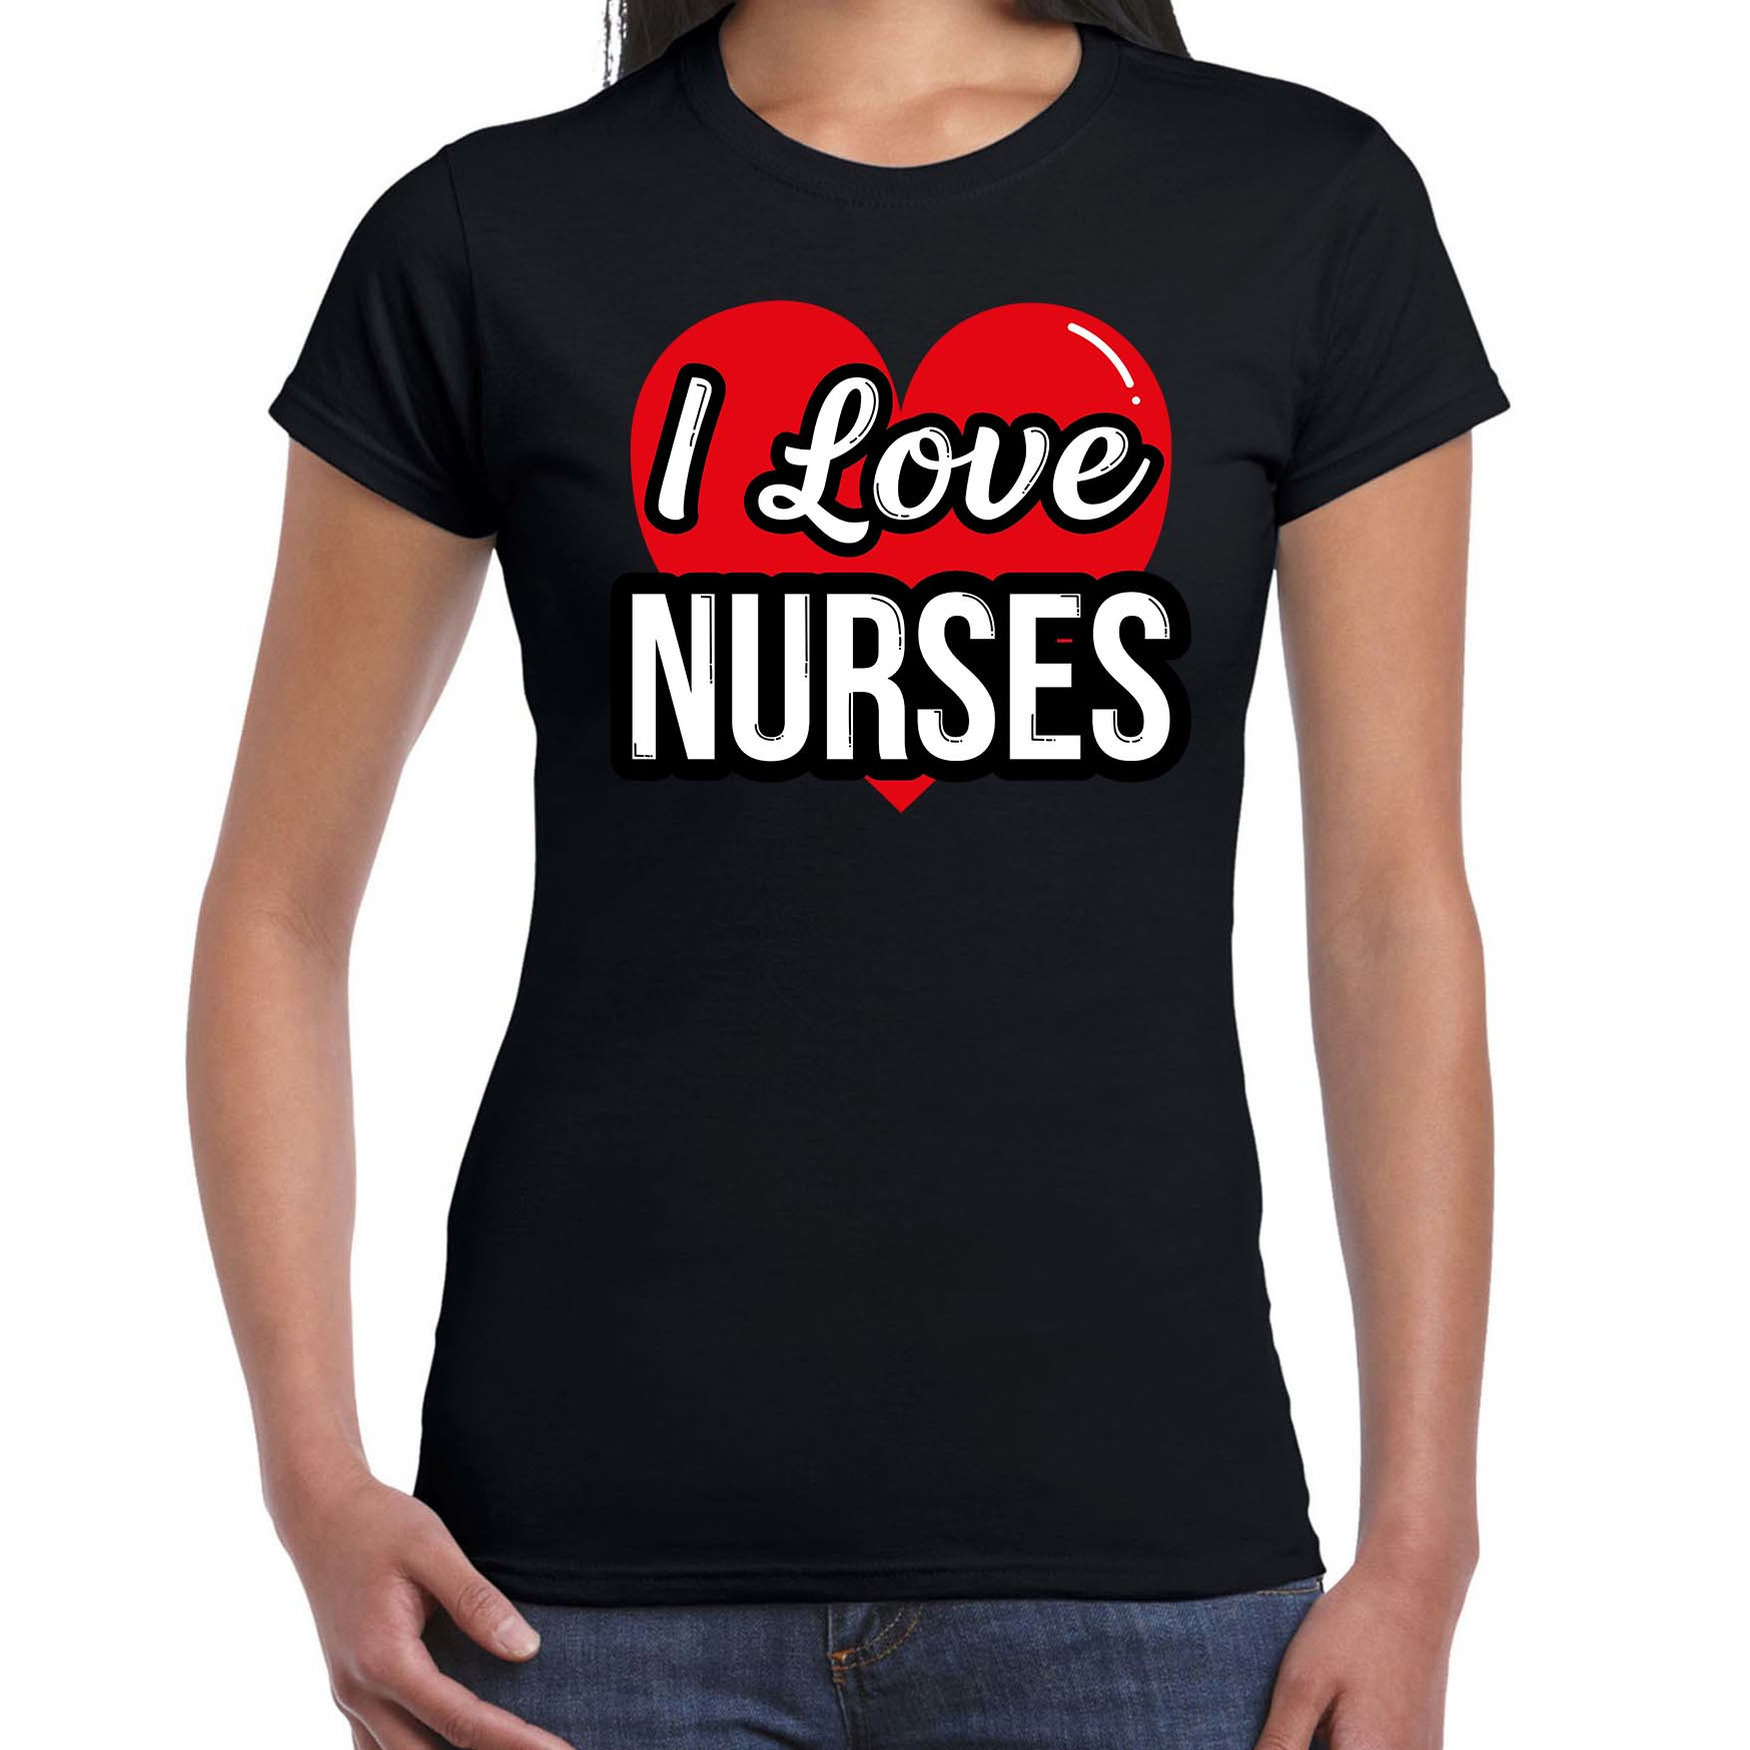 I love nurses-zusters verkleed t-shirt zwart voor dames Outfit verkleed feest